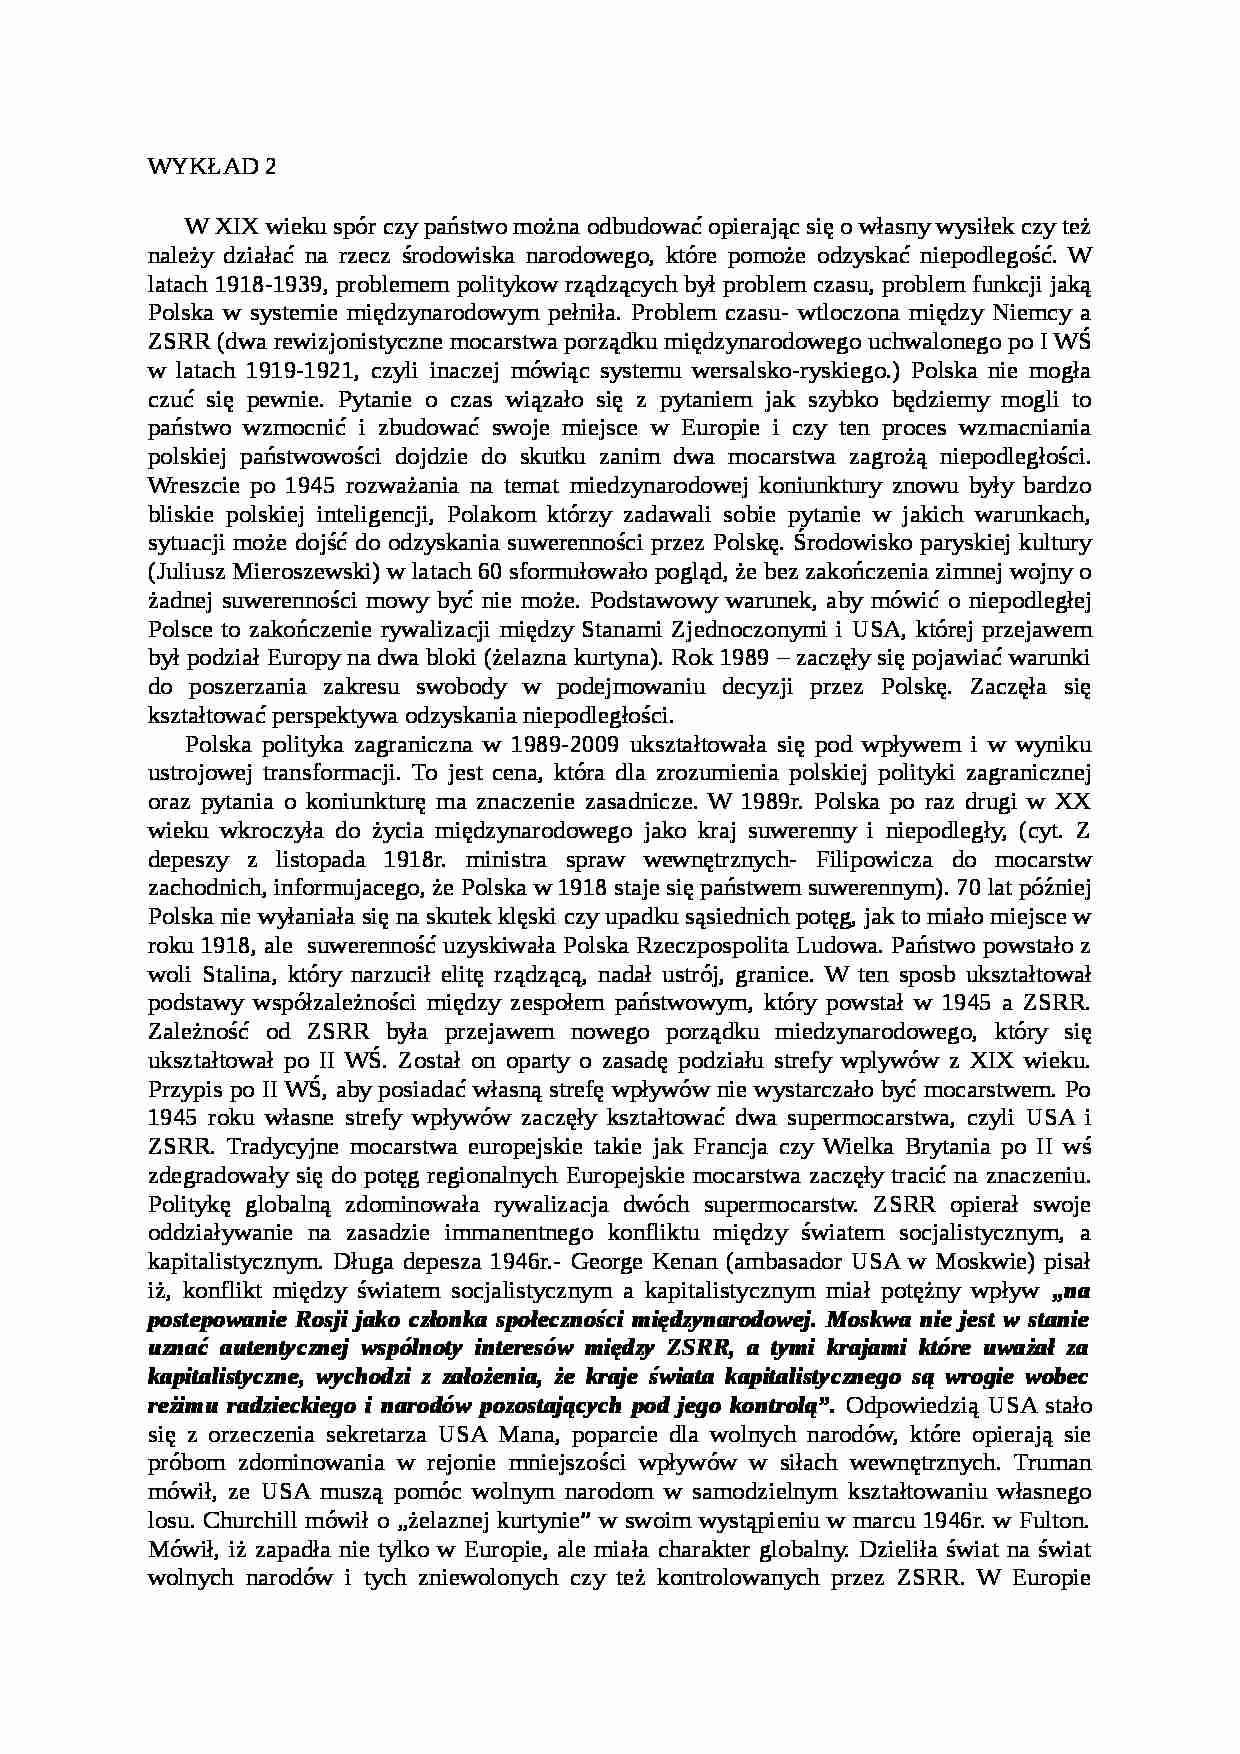 Polska polityka zagraniczna- wykład 2 - strona 1